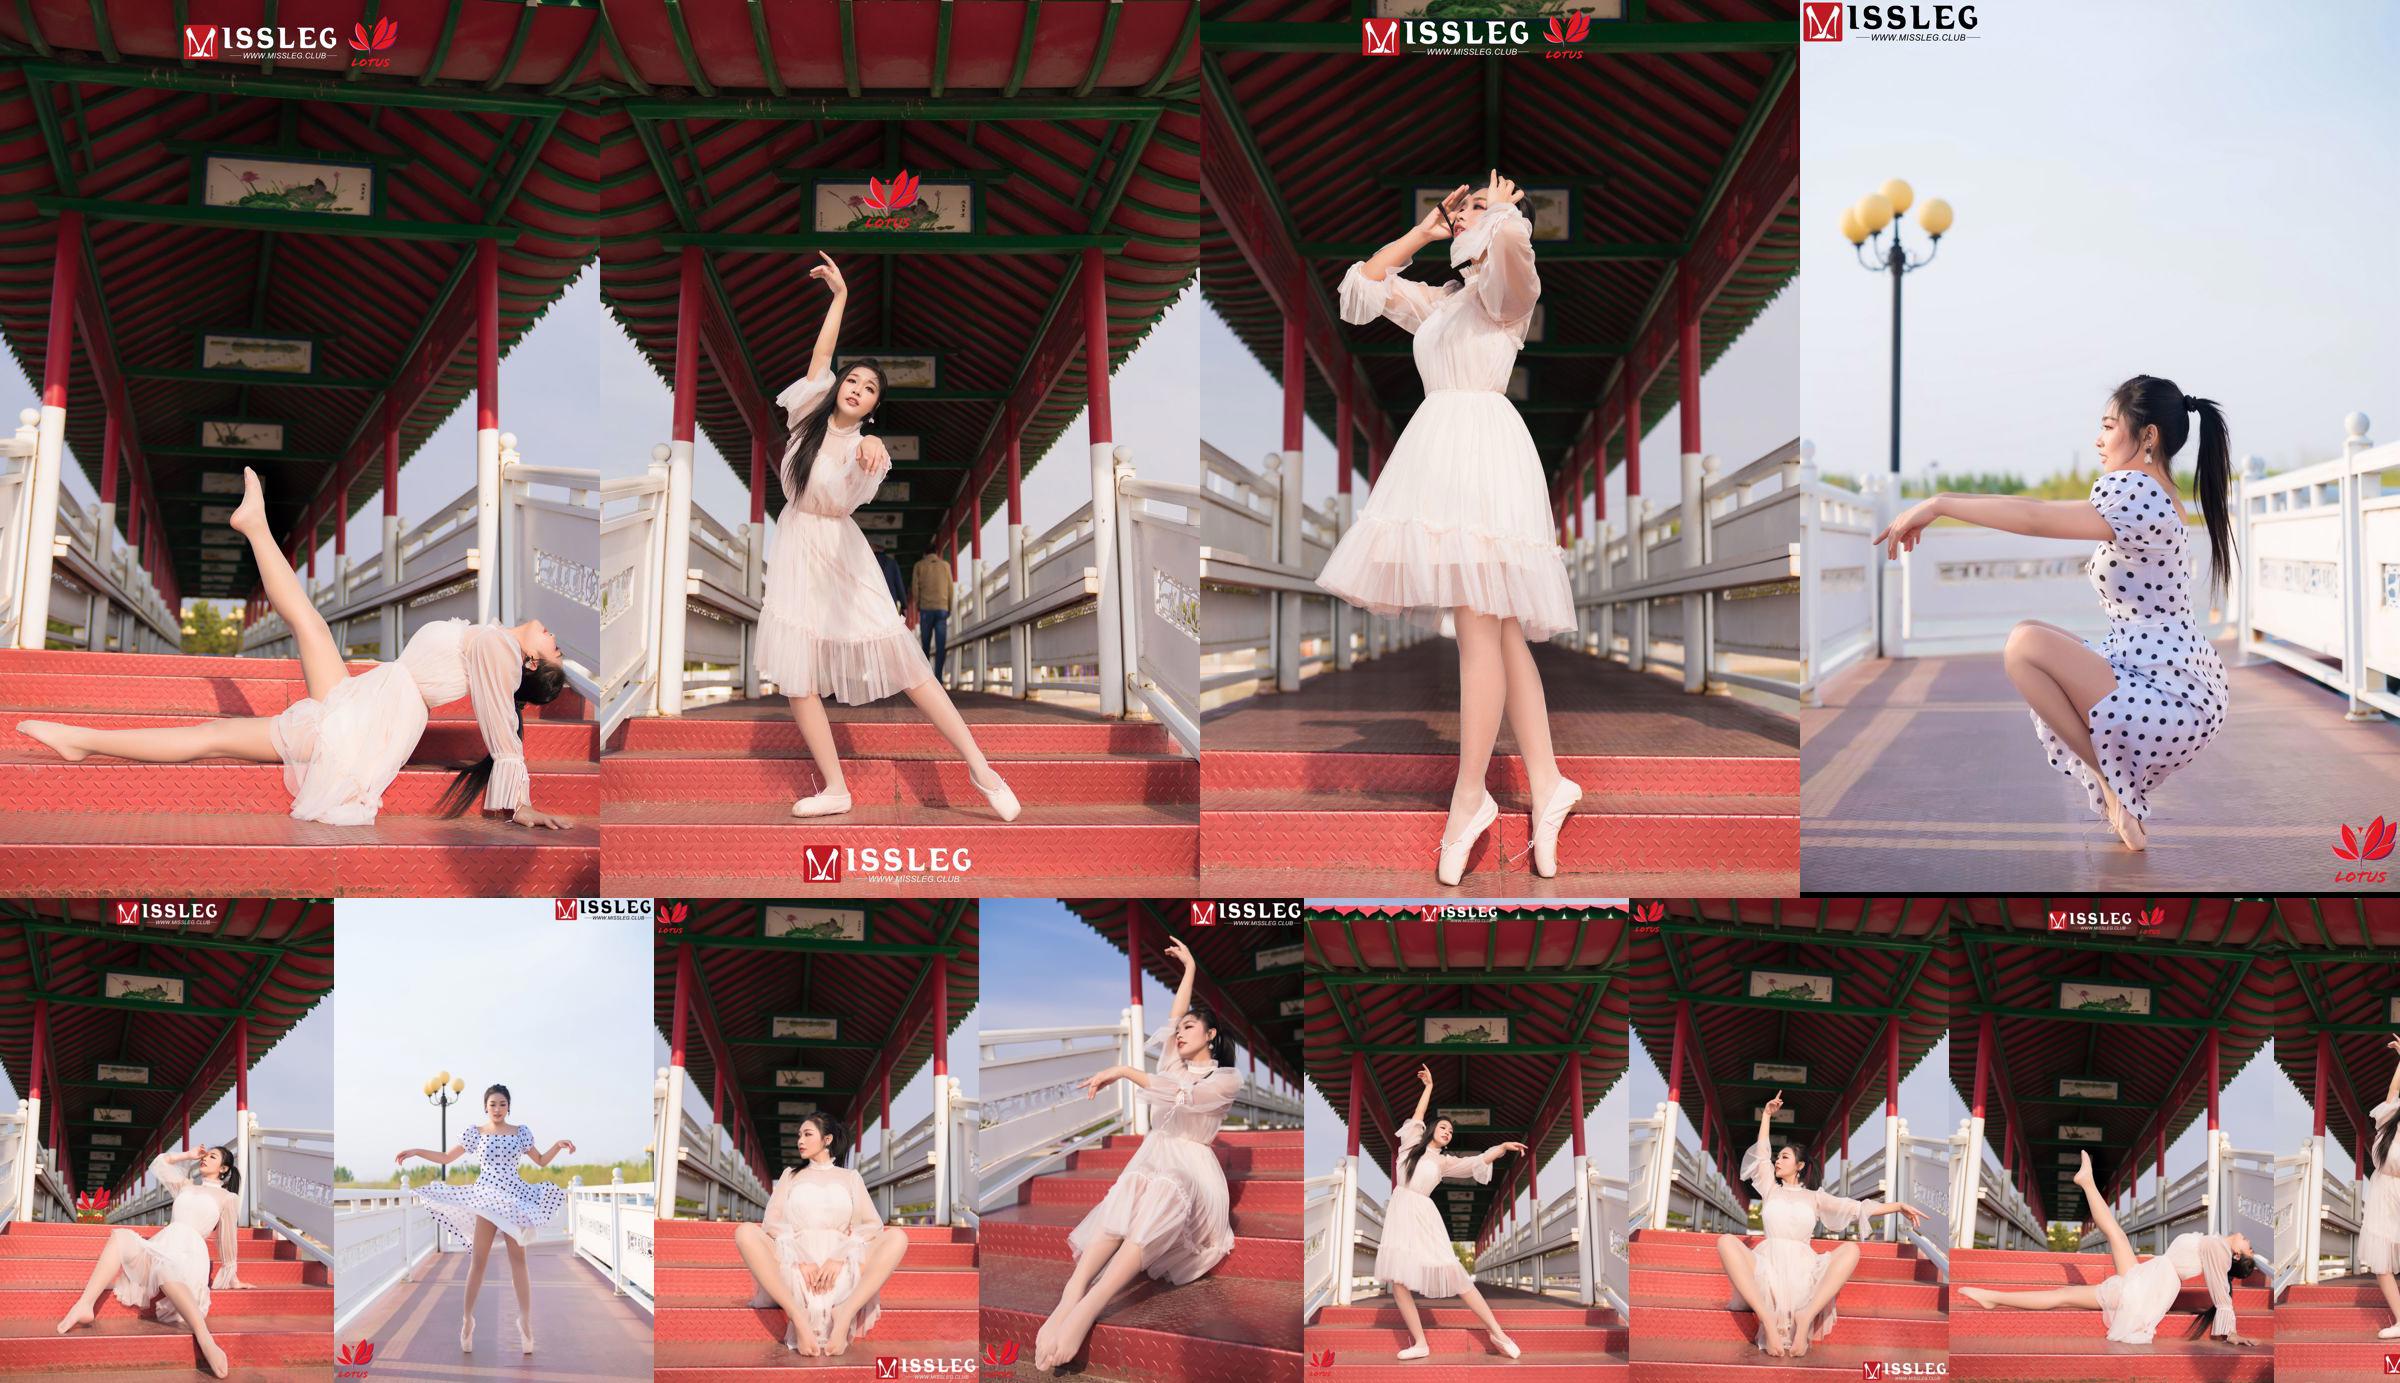 [蜜丝MISSLEG] M018 Imp 3 "Scenic Dancer" No.330e4b Page 1